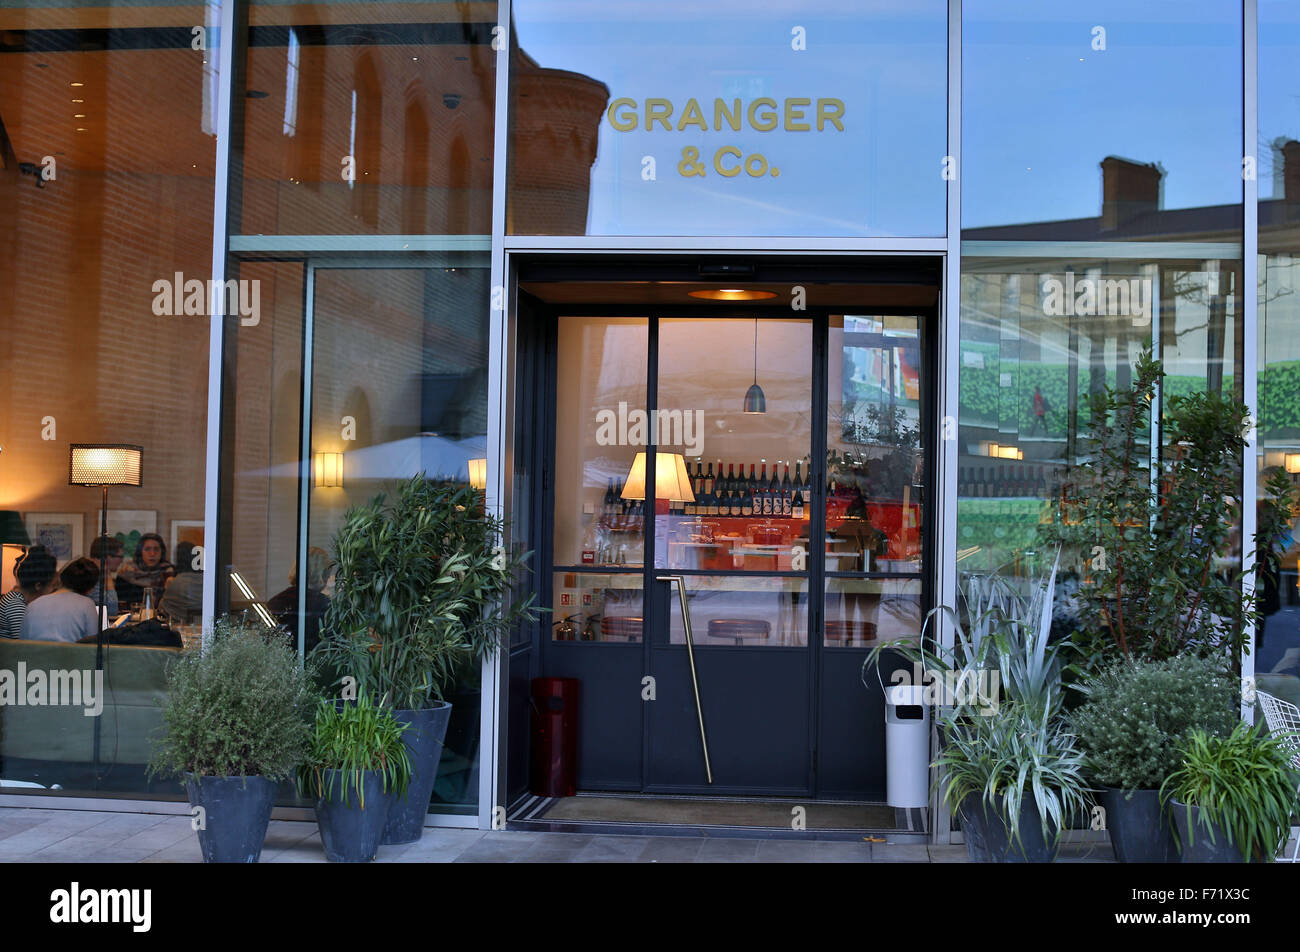 Granger & Co restaurant and bar, King's Cross, London Stock Photo